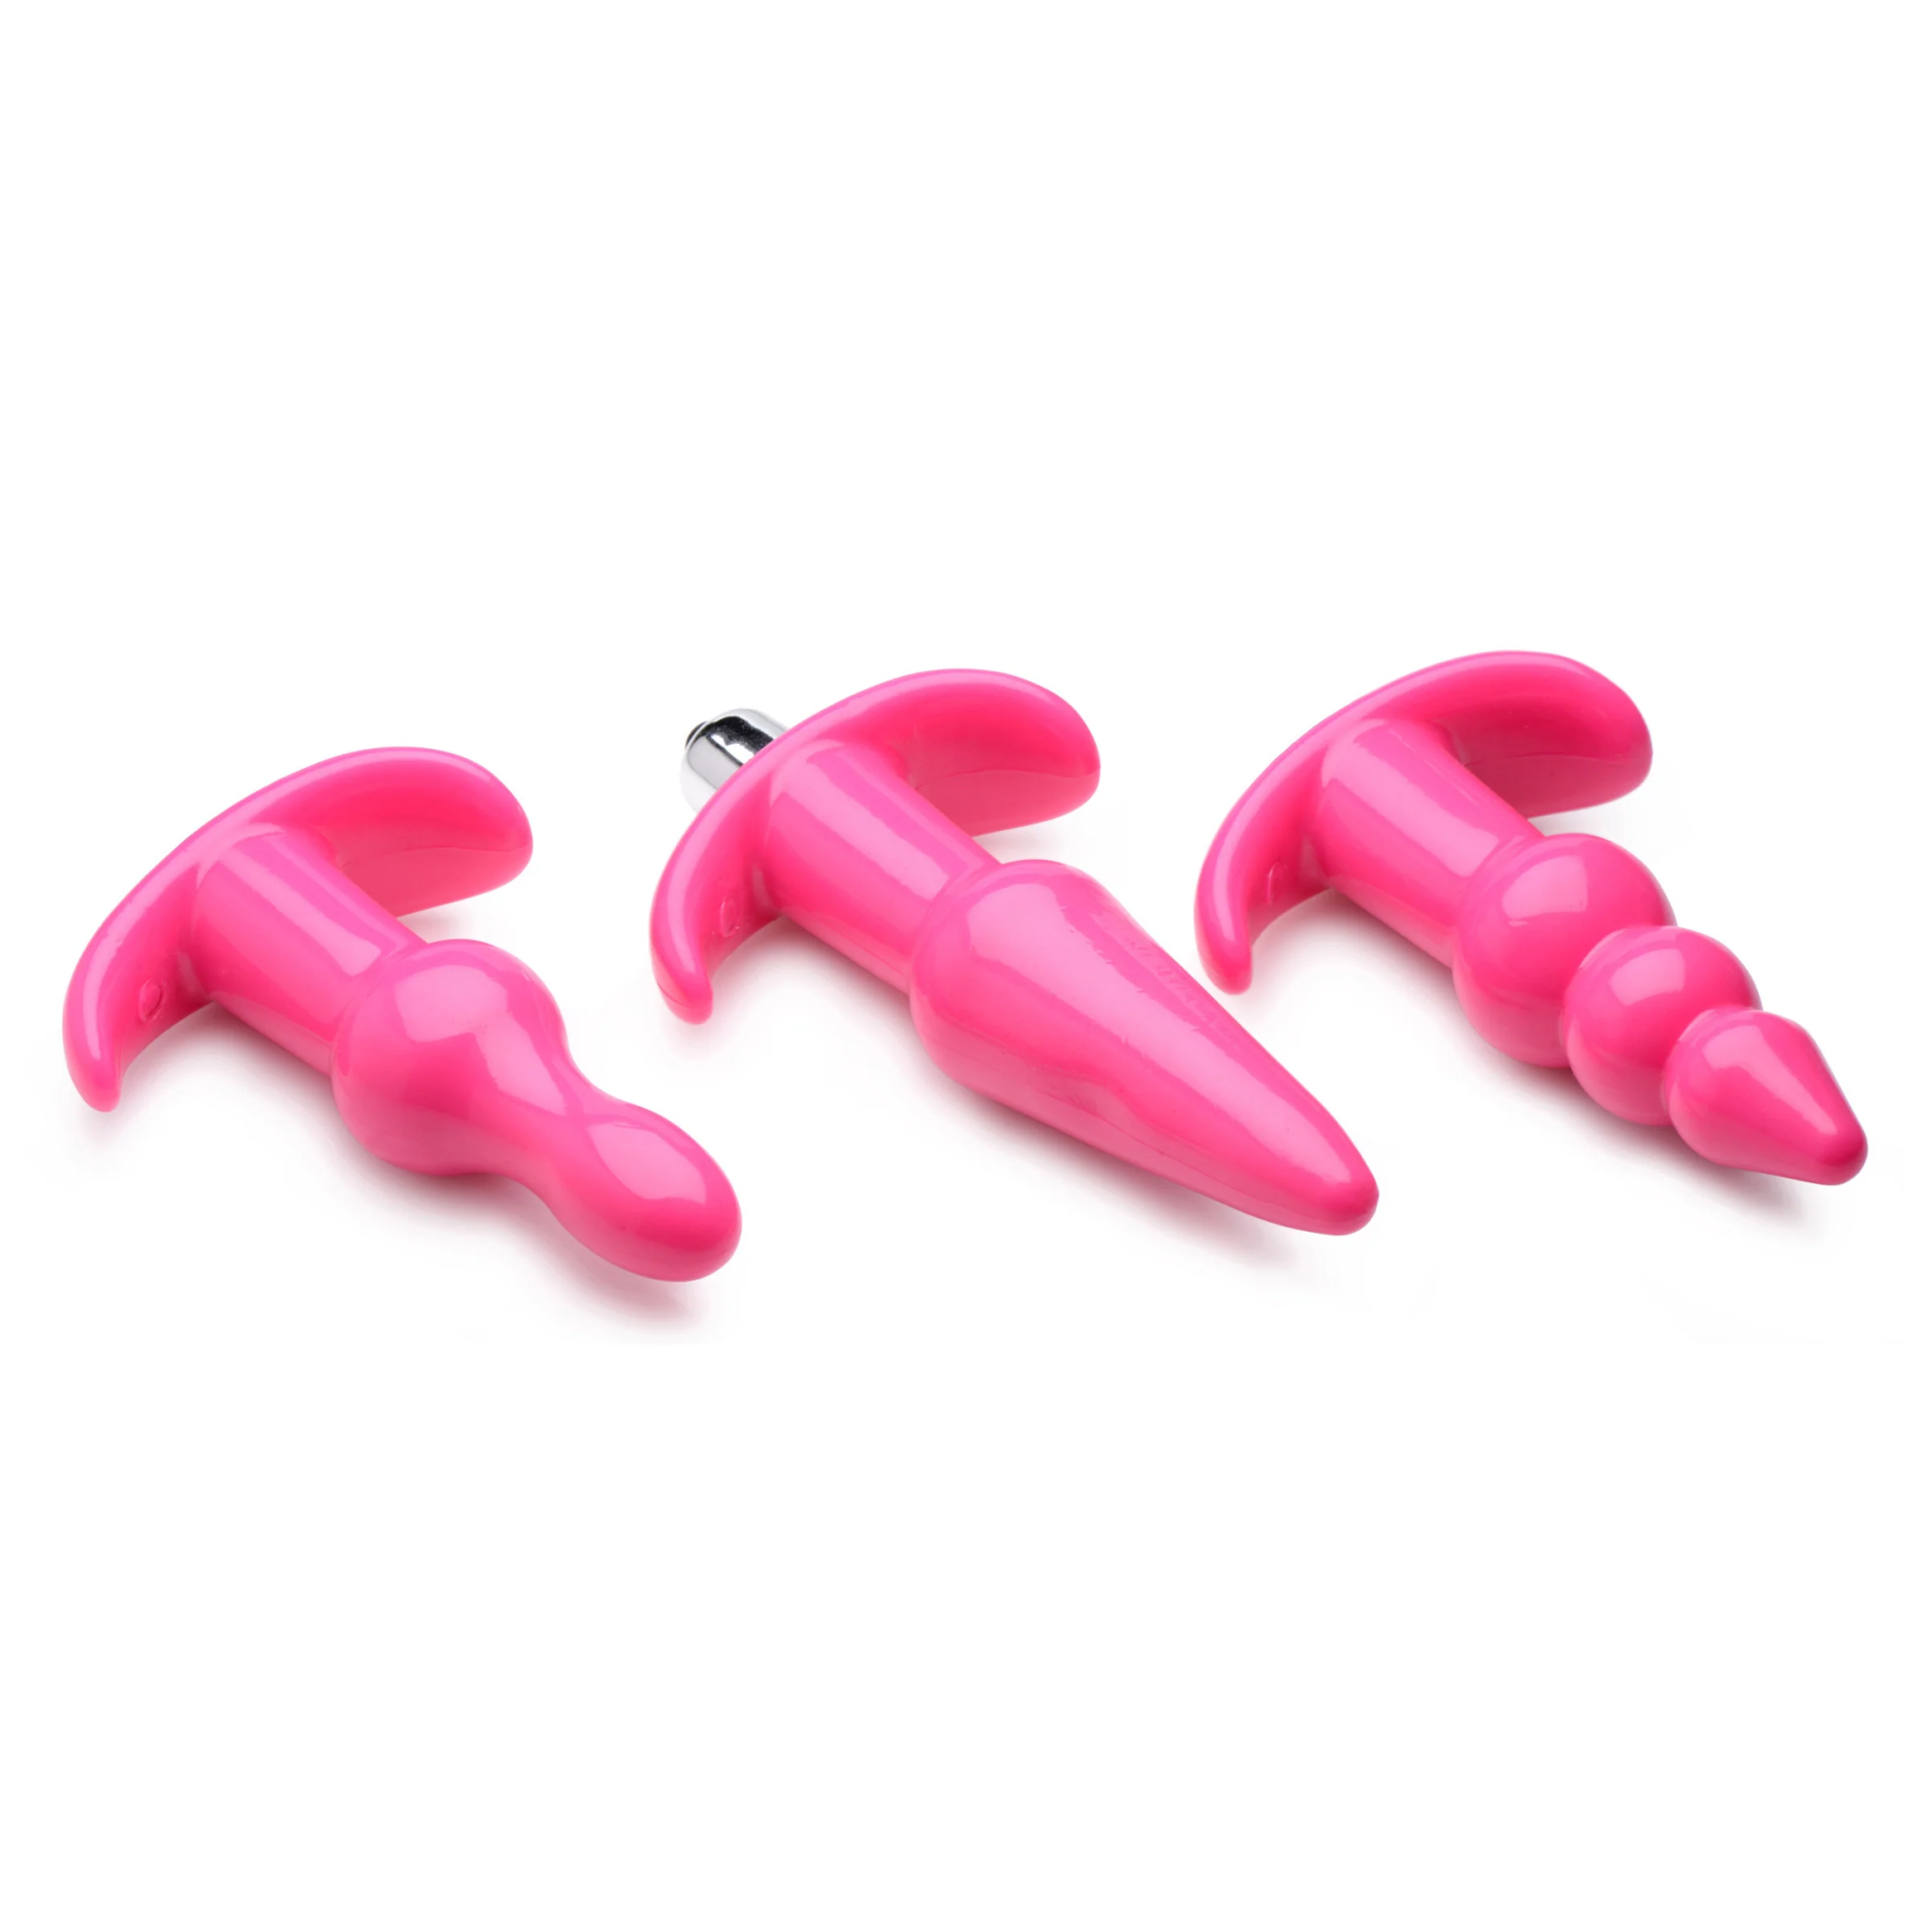 Frisky Thrill Trio Pink Vibrating Plug Set - набор фигурных анальных пробок с вибропулей, 3 шт (розовый) - фото 1